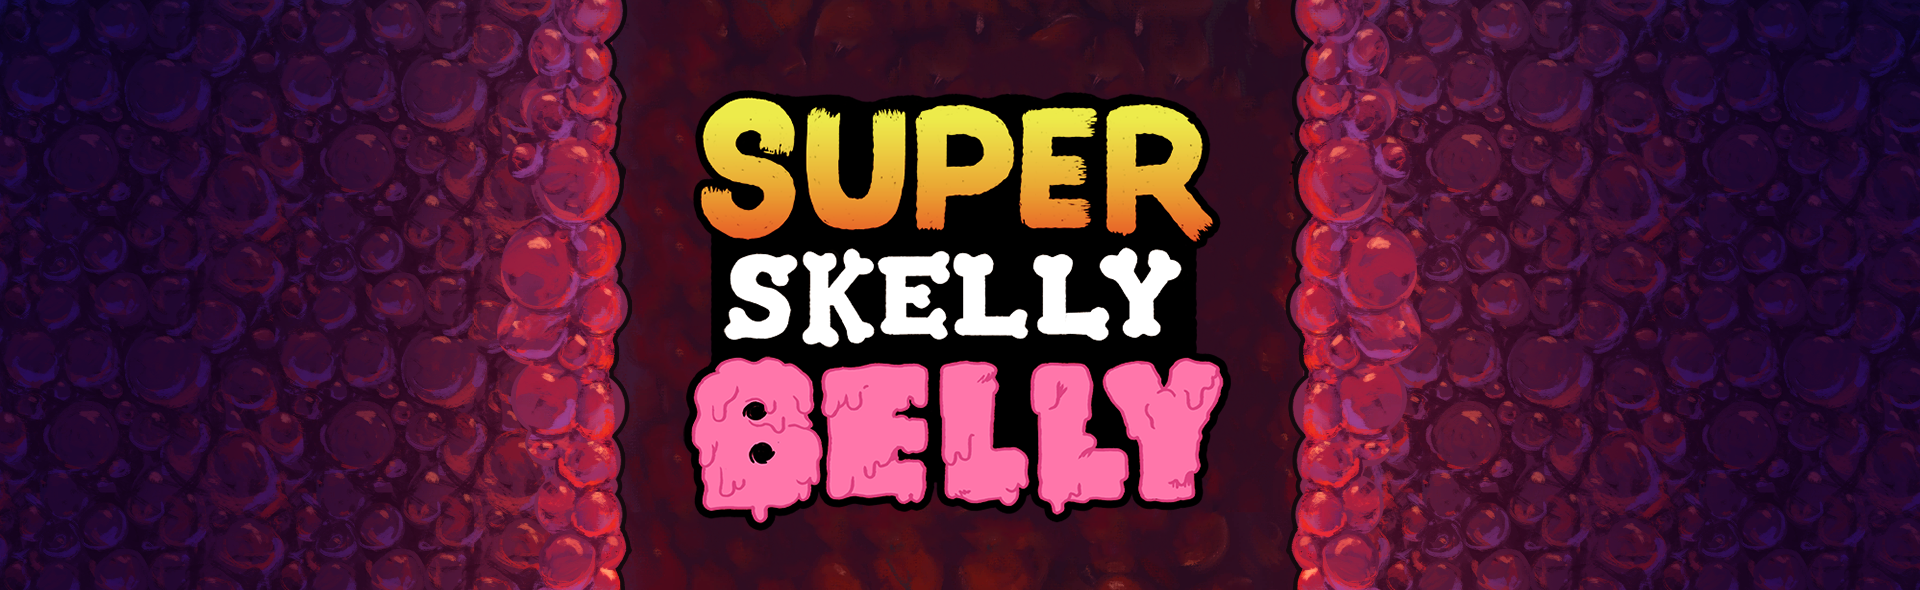 Super Skelly Belly